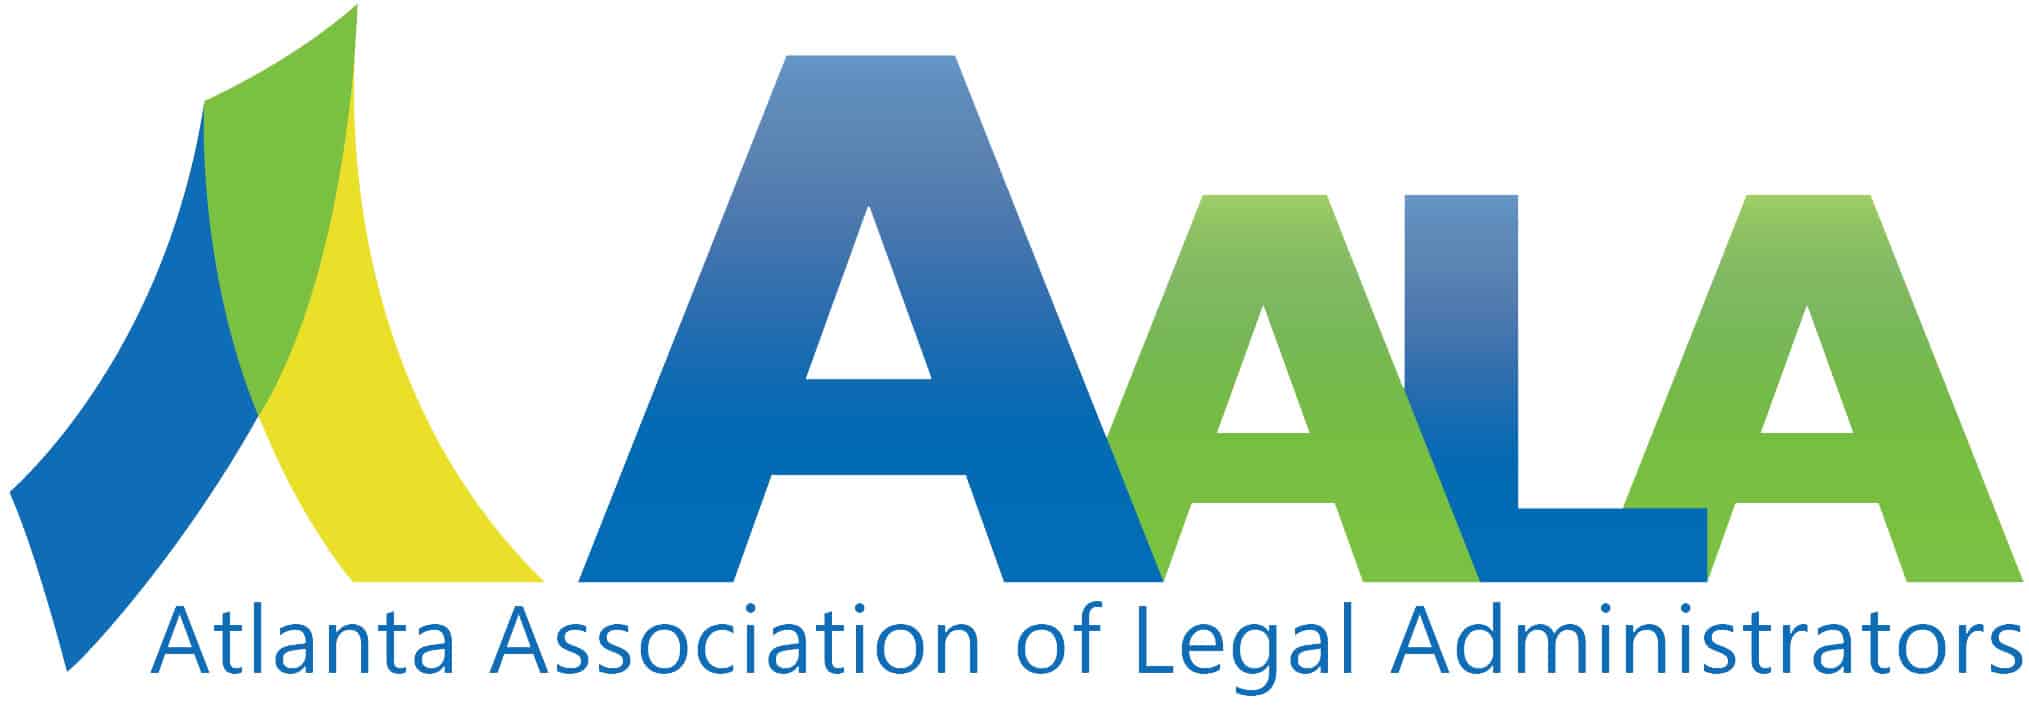 Atlanta Association Legal Administrators